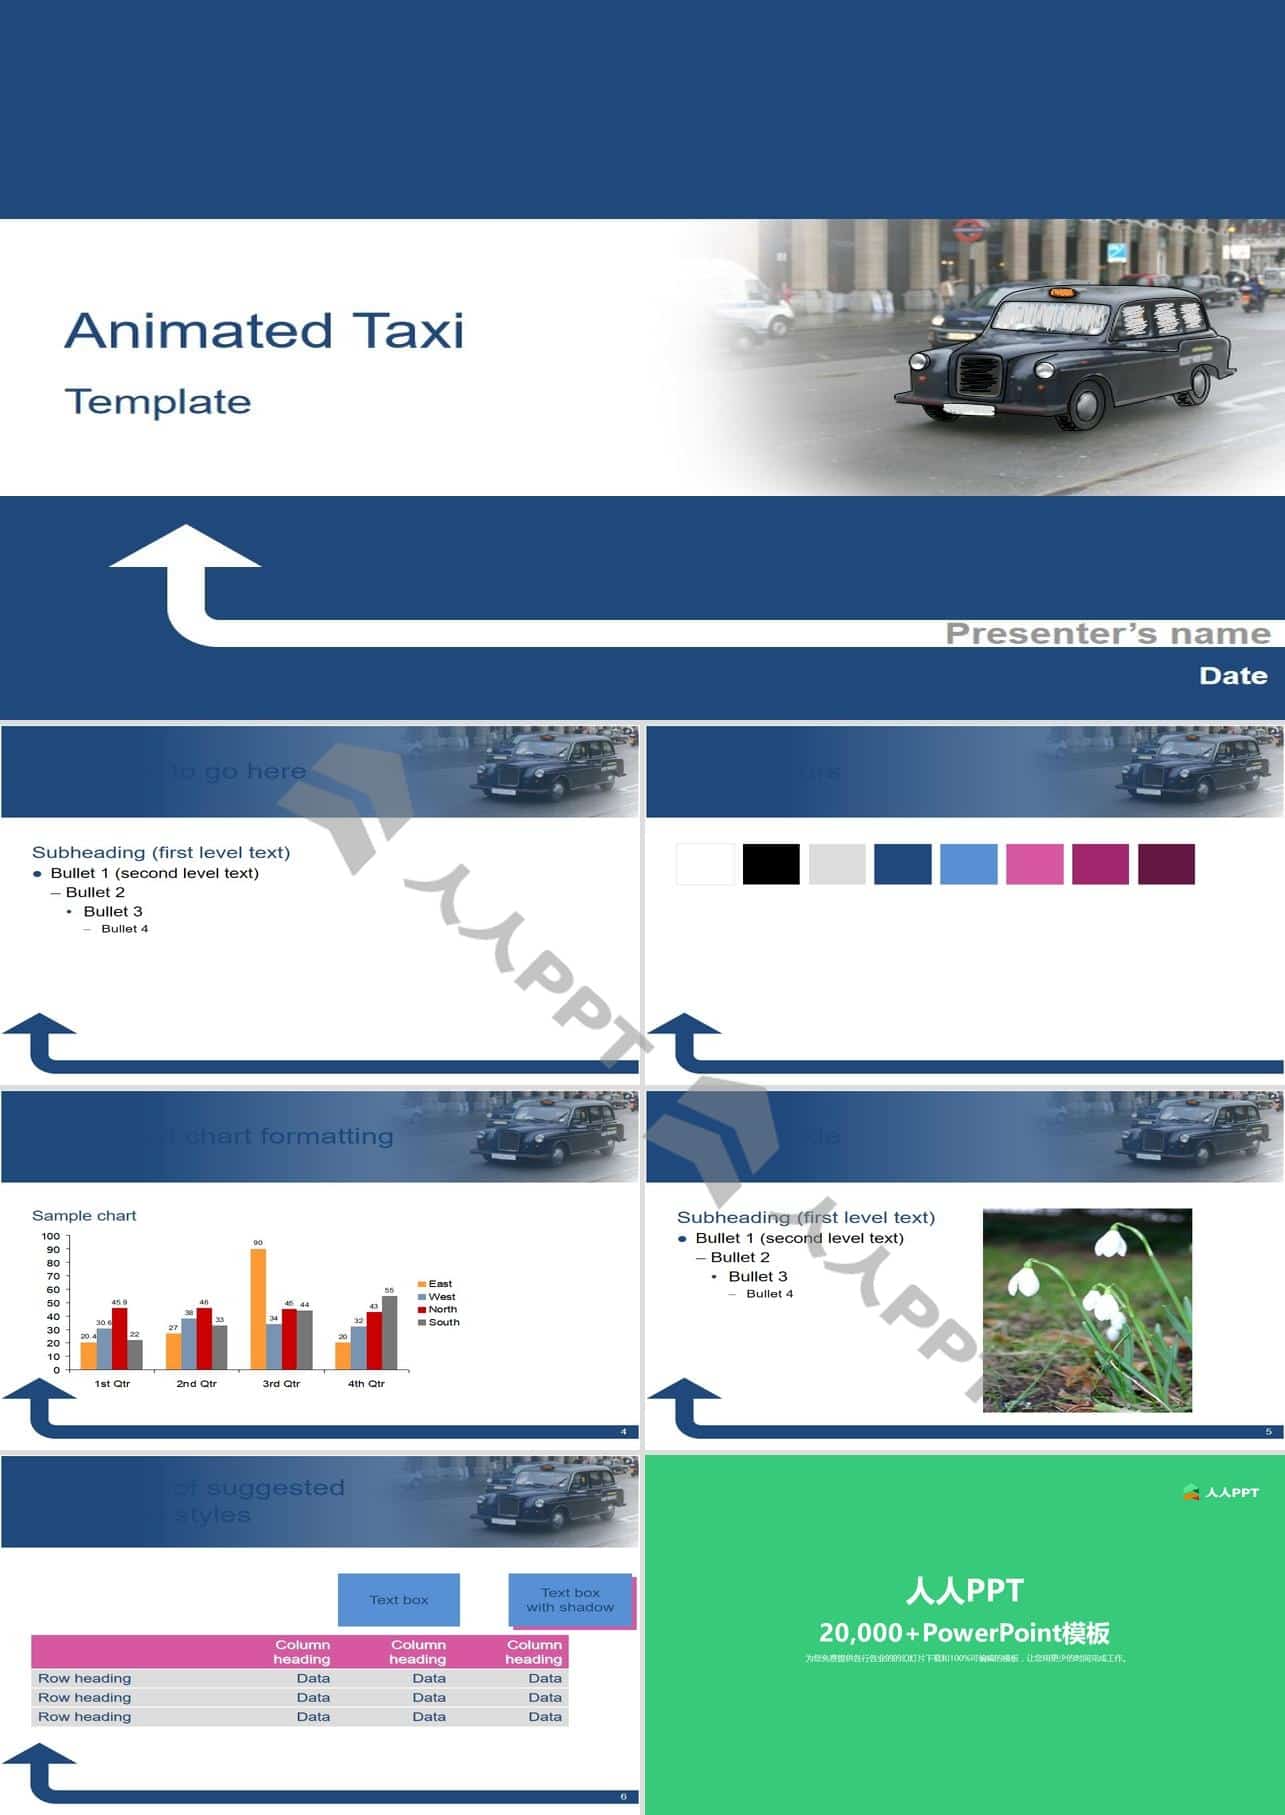 PPT动态绘制小汽车――出租车运输行业PPT模板长图